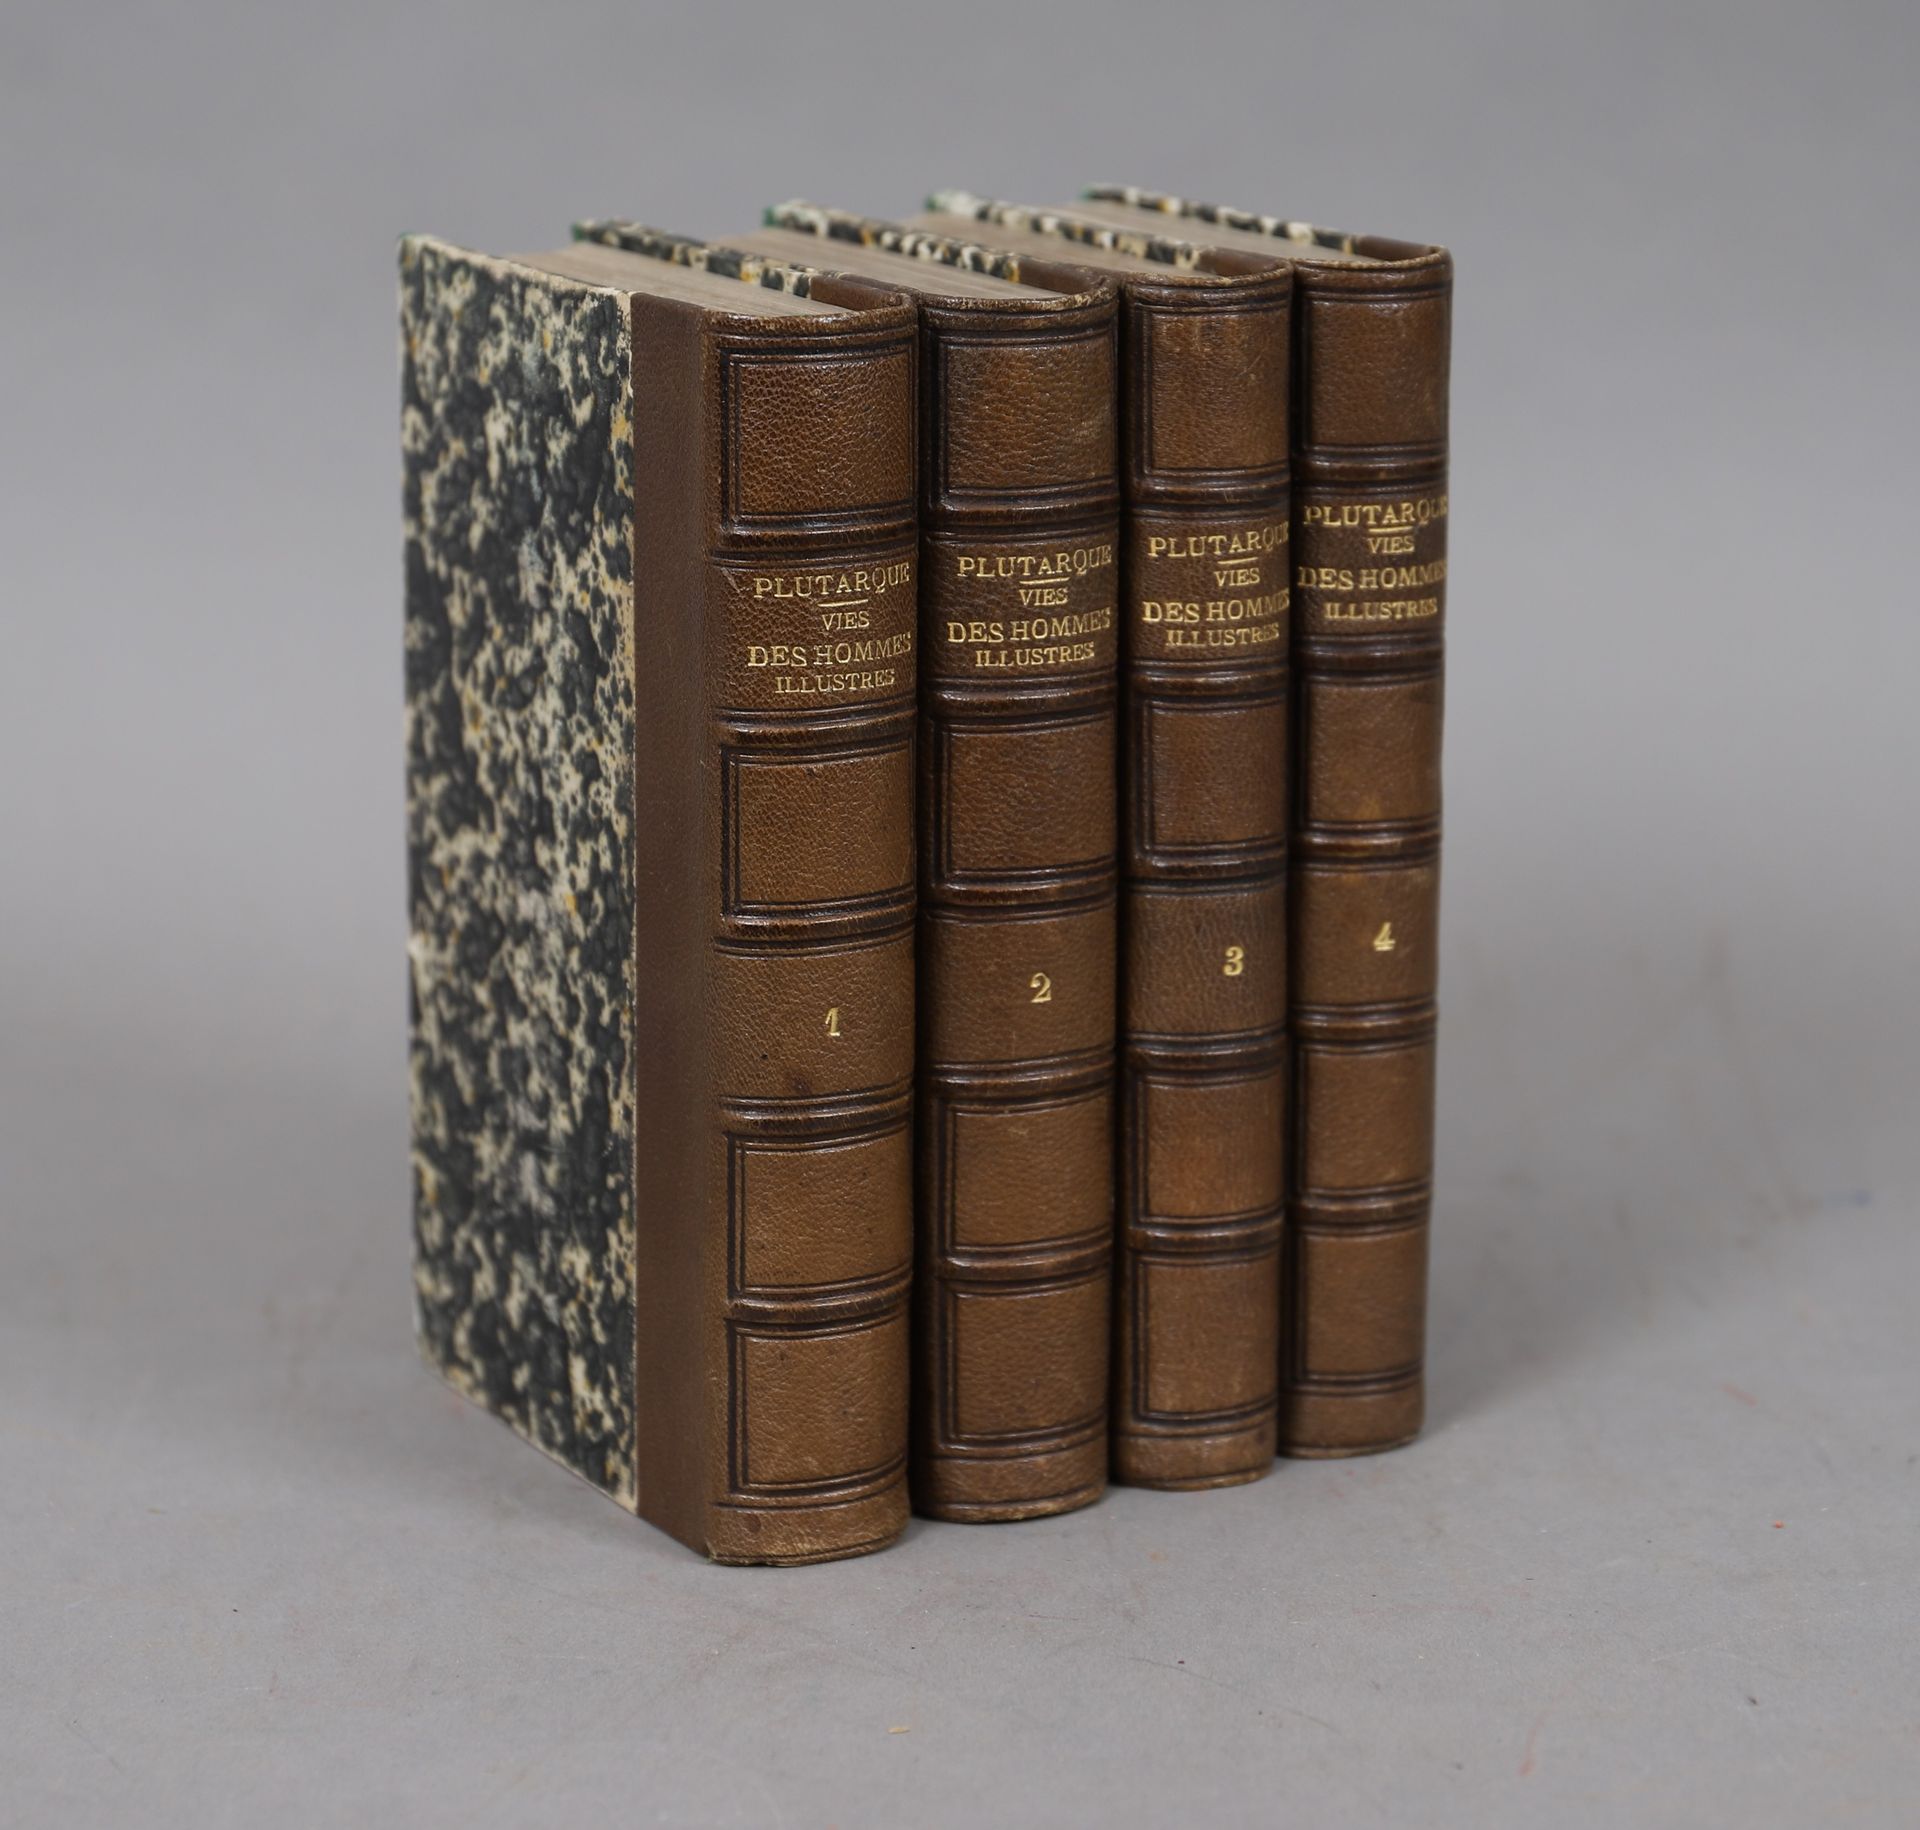 Null PLUTARCO - VITA DEGLI UOMINI ILLUSTRATI

4 volumi rilegati.

1861